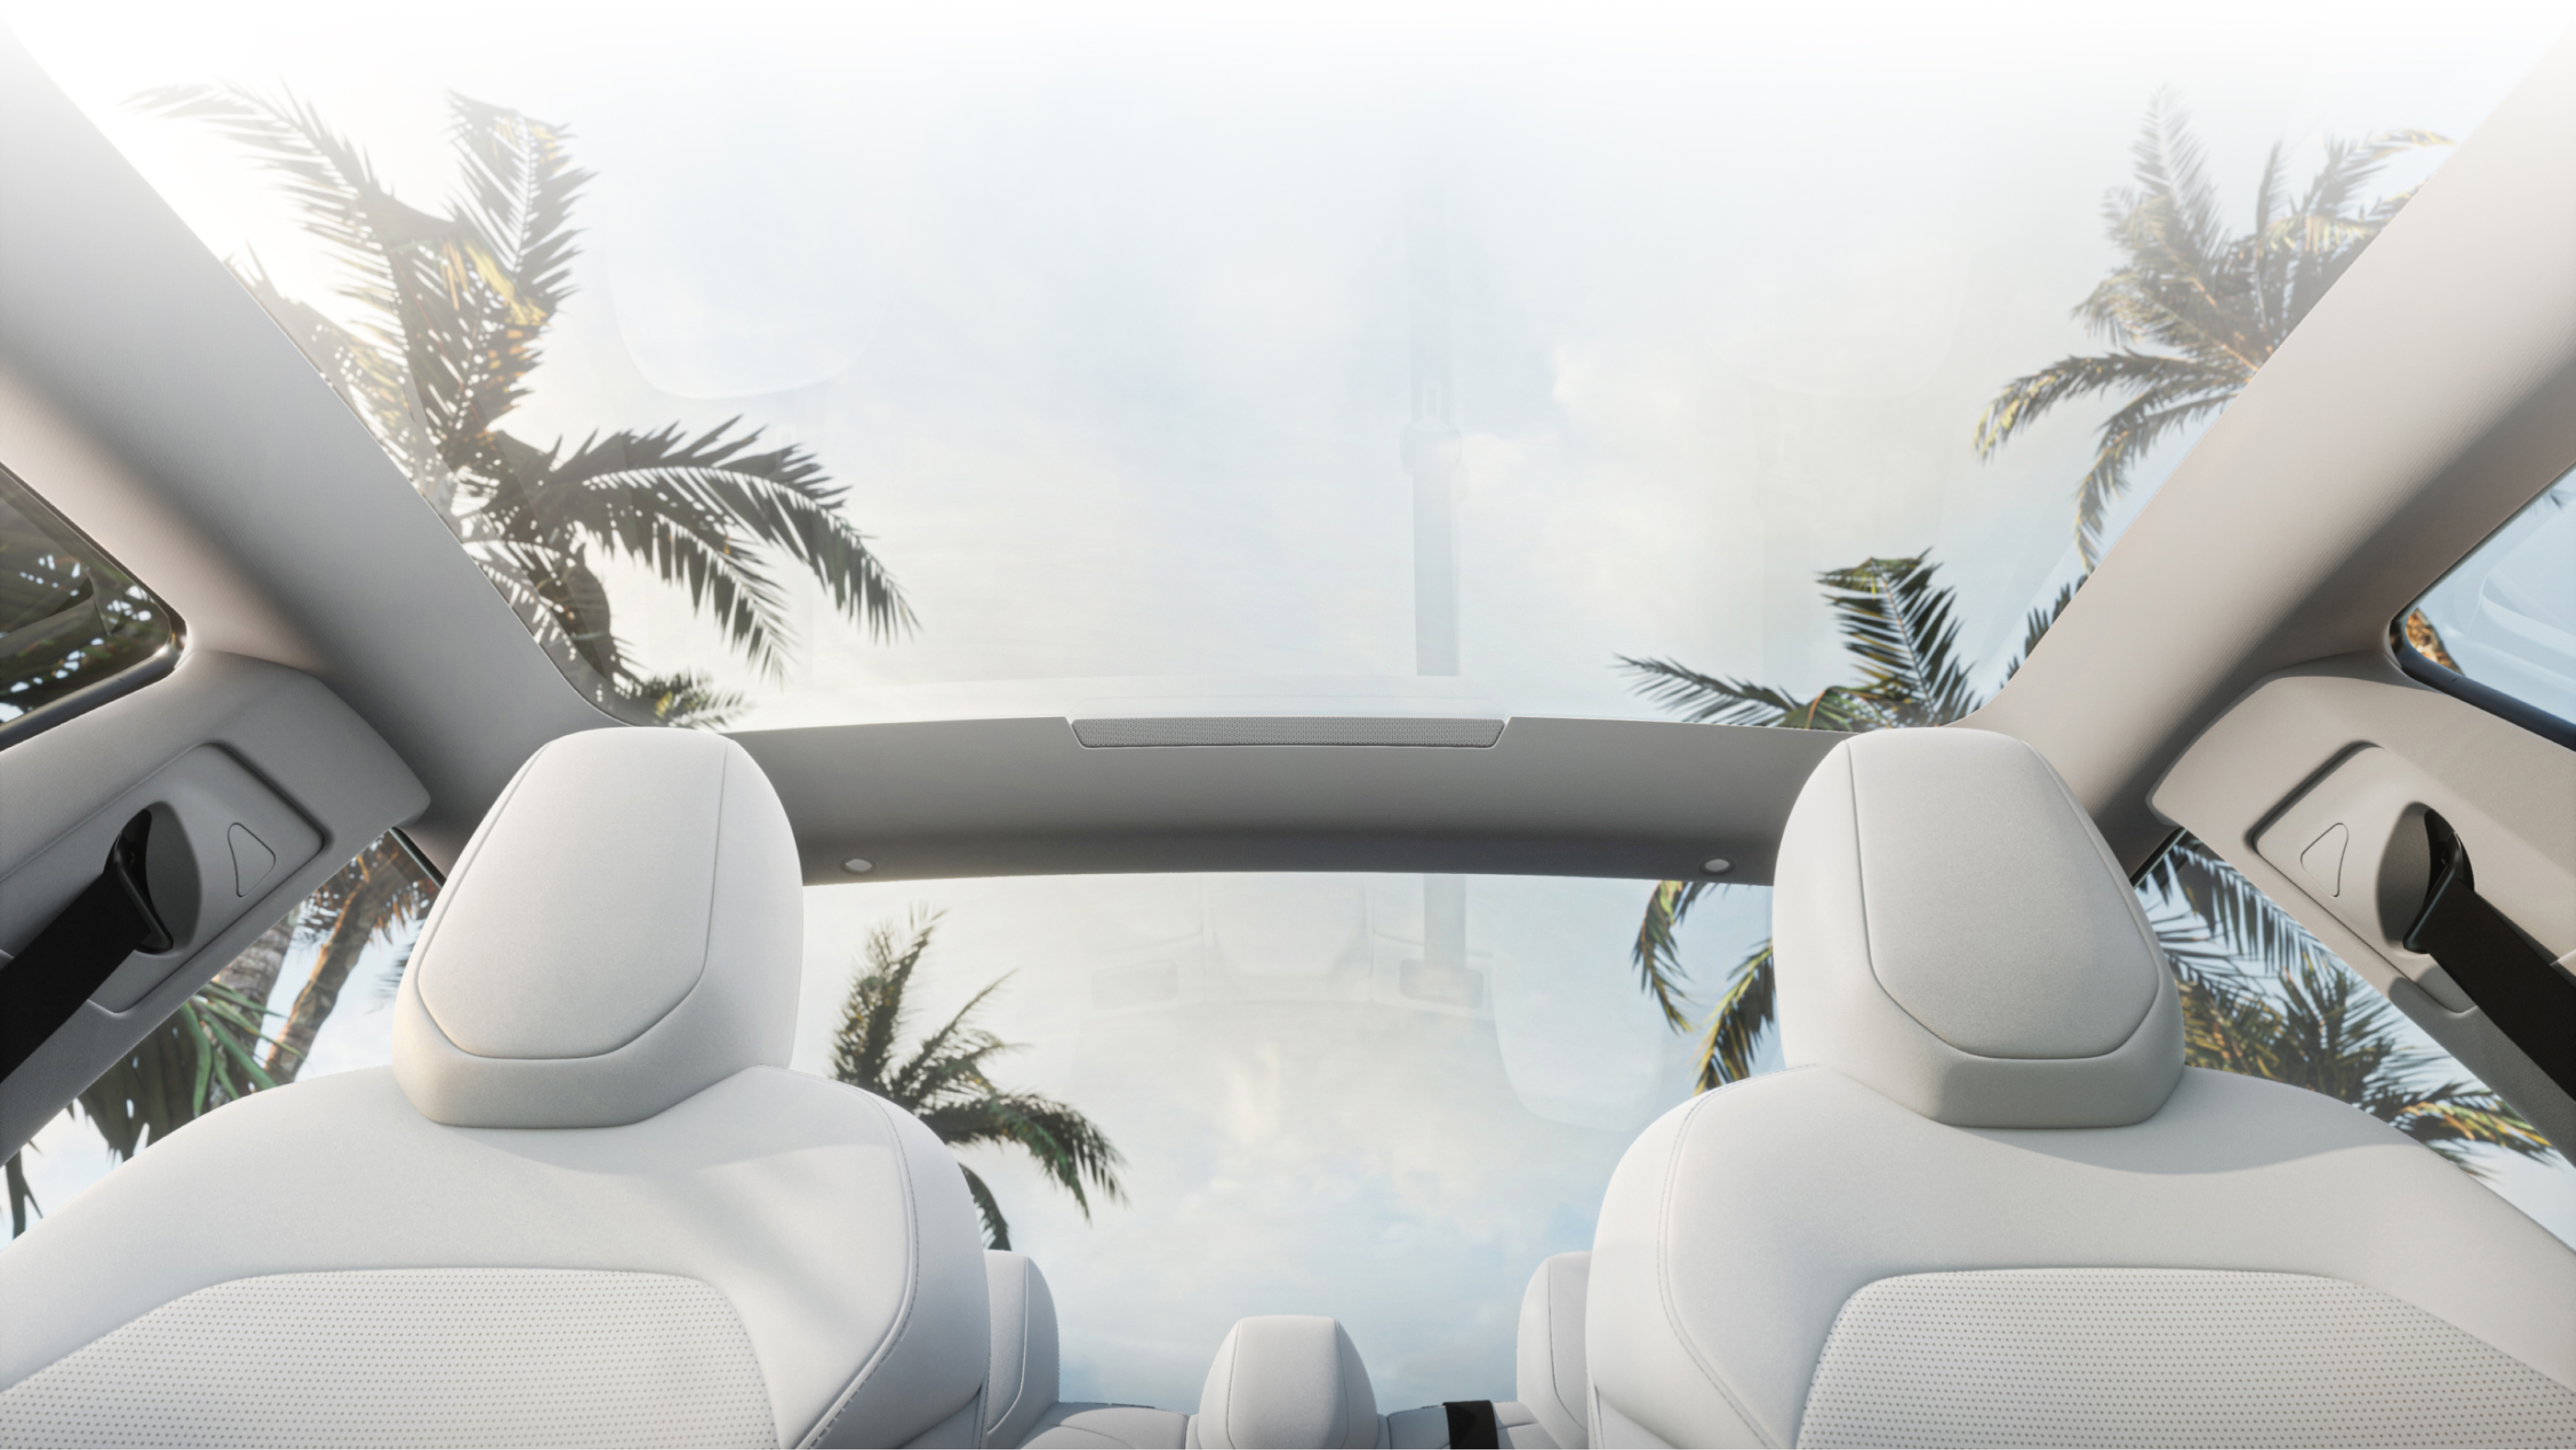 從白色前排座椅下方觀看玻璃車頂遙望棕櫚樹和碧藍的天空。